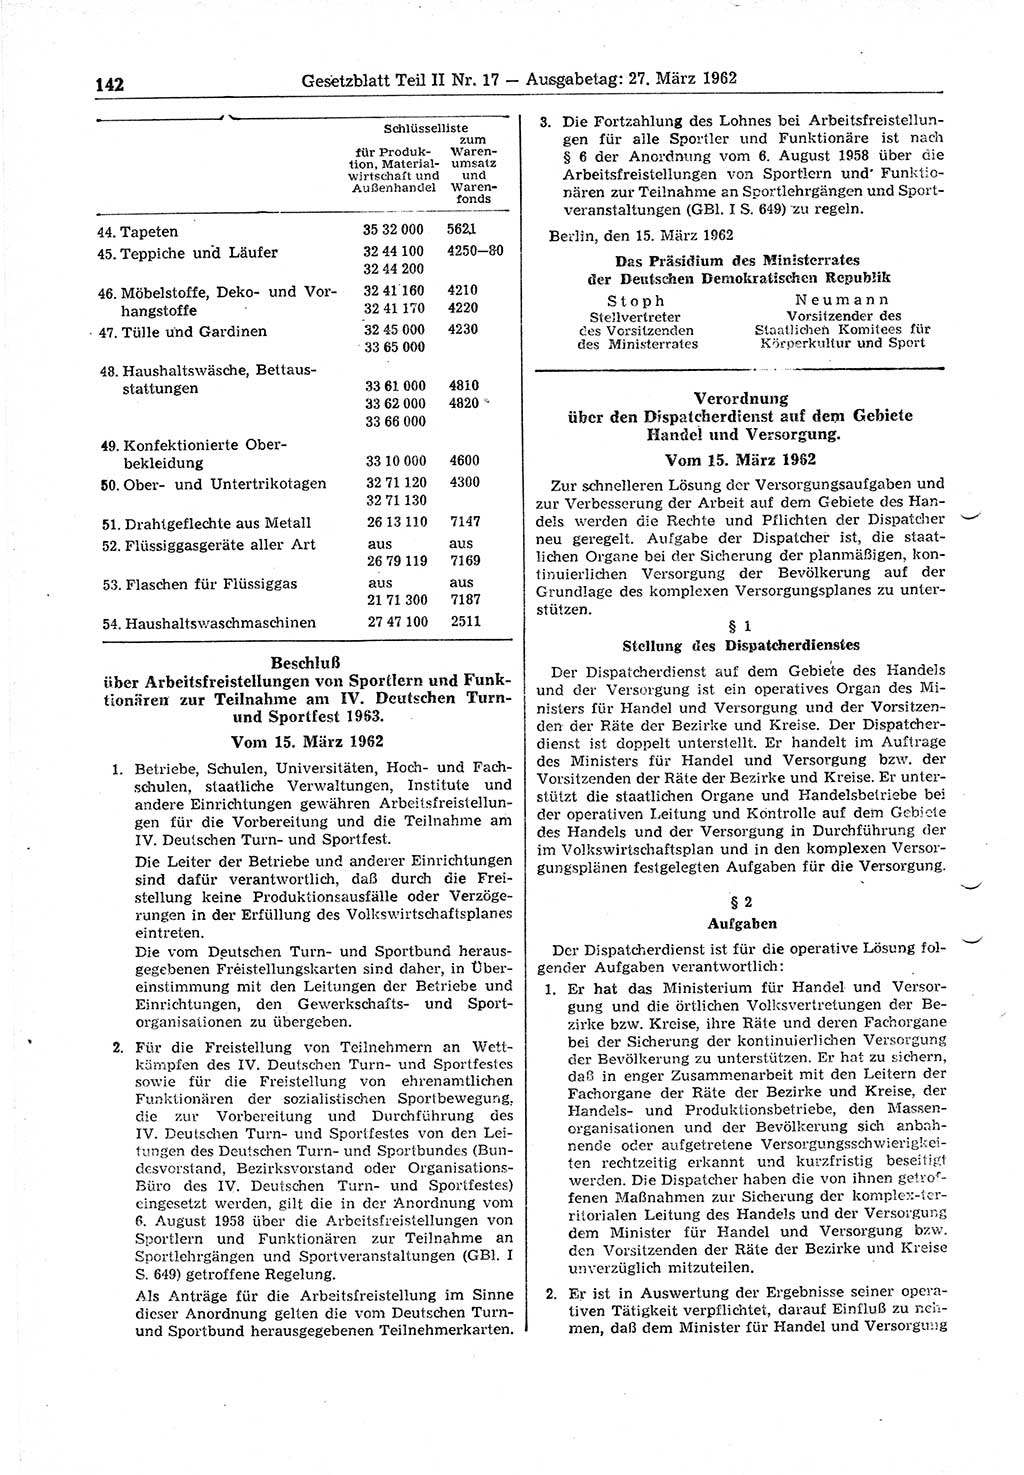 Gesetzblatt (GBl.) der Deutschen Demokratischen Republik (DDR) Teil ⅠⅠ 1962, Seite 142 (GBl. DDR ⅠⅠ 1962, S. 142)